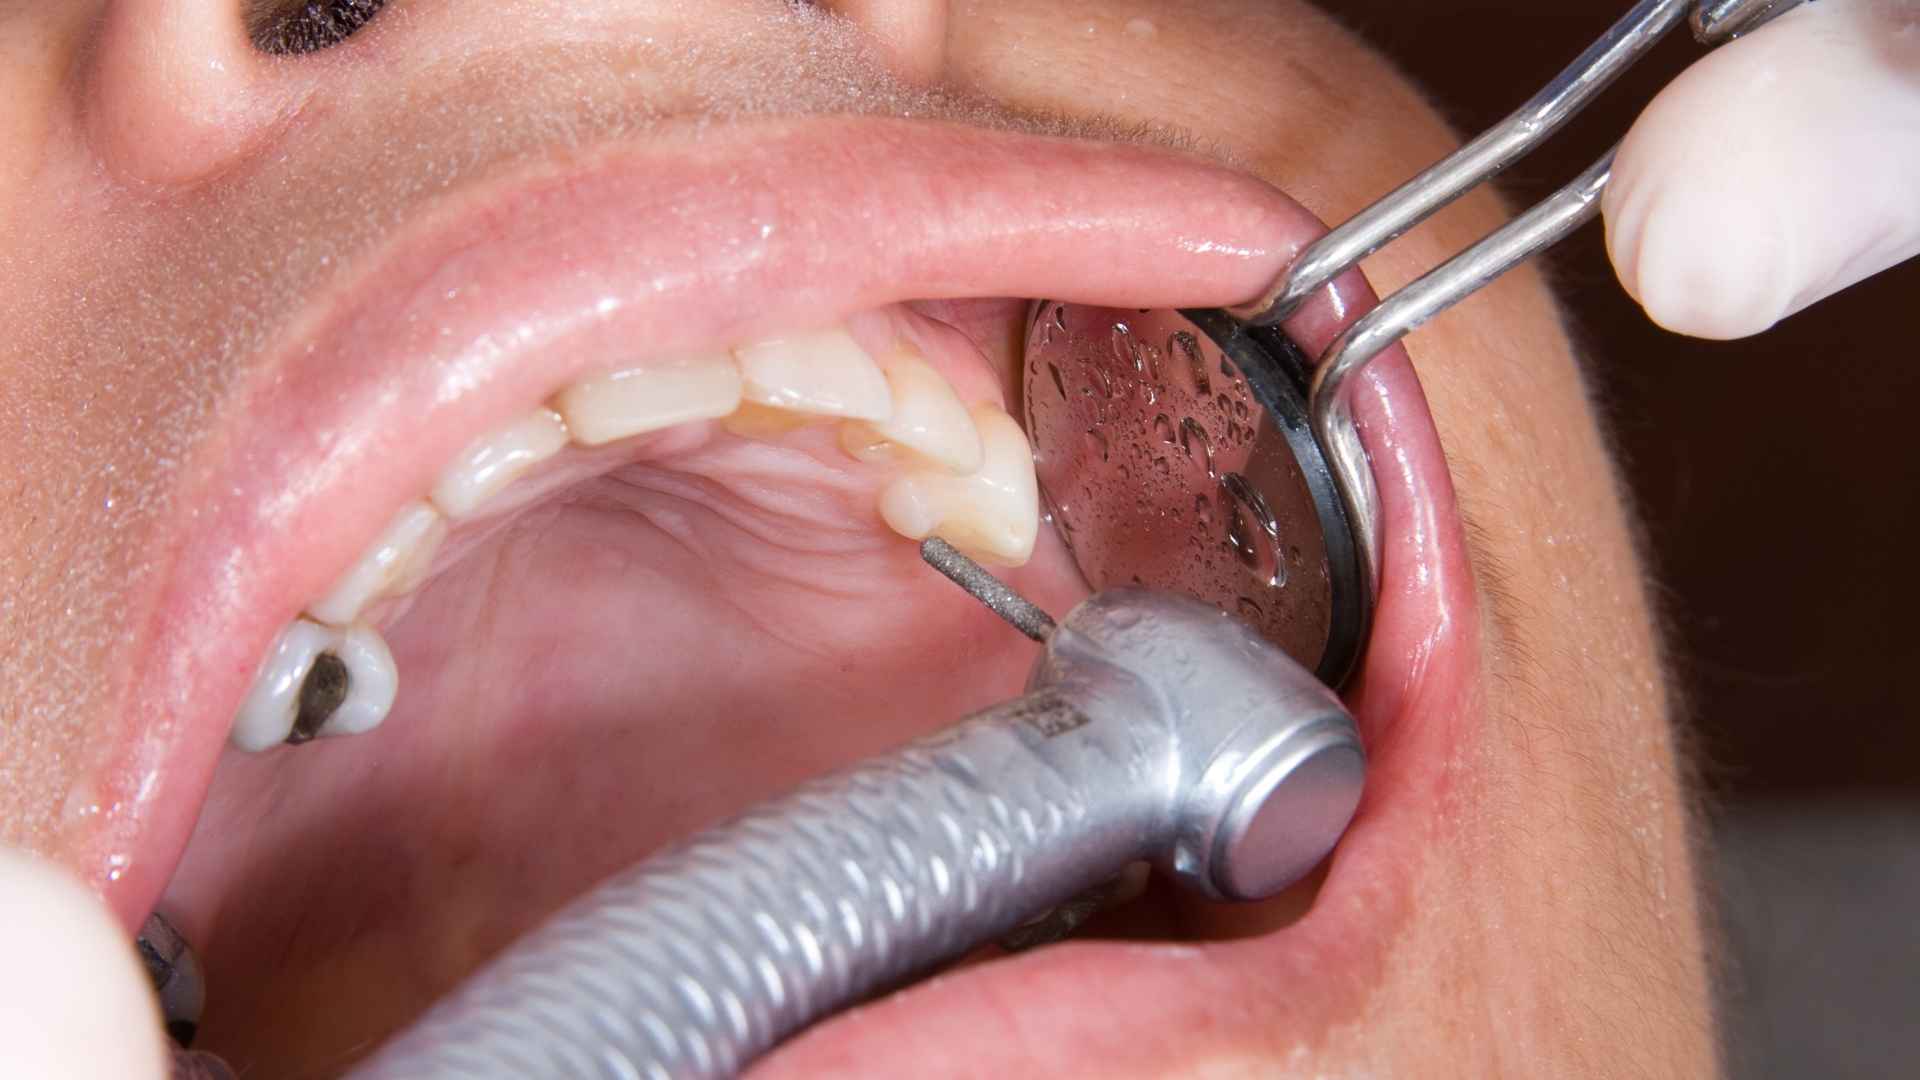 שיקום הפה וטיפולים אסתטיים